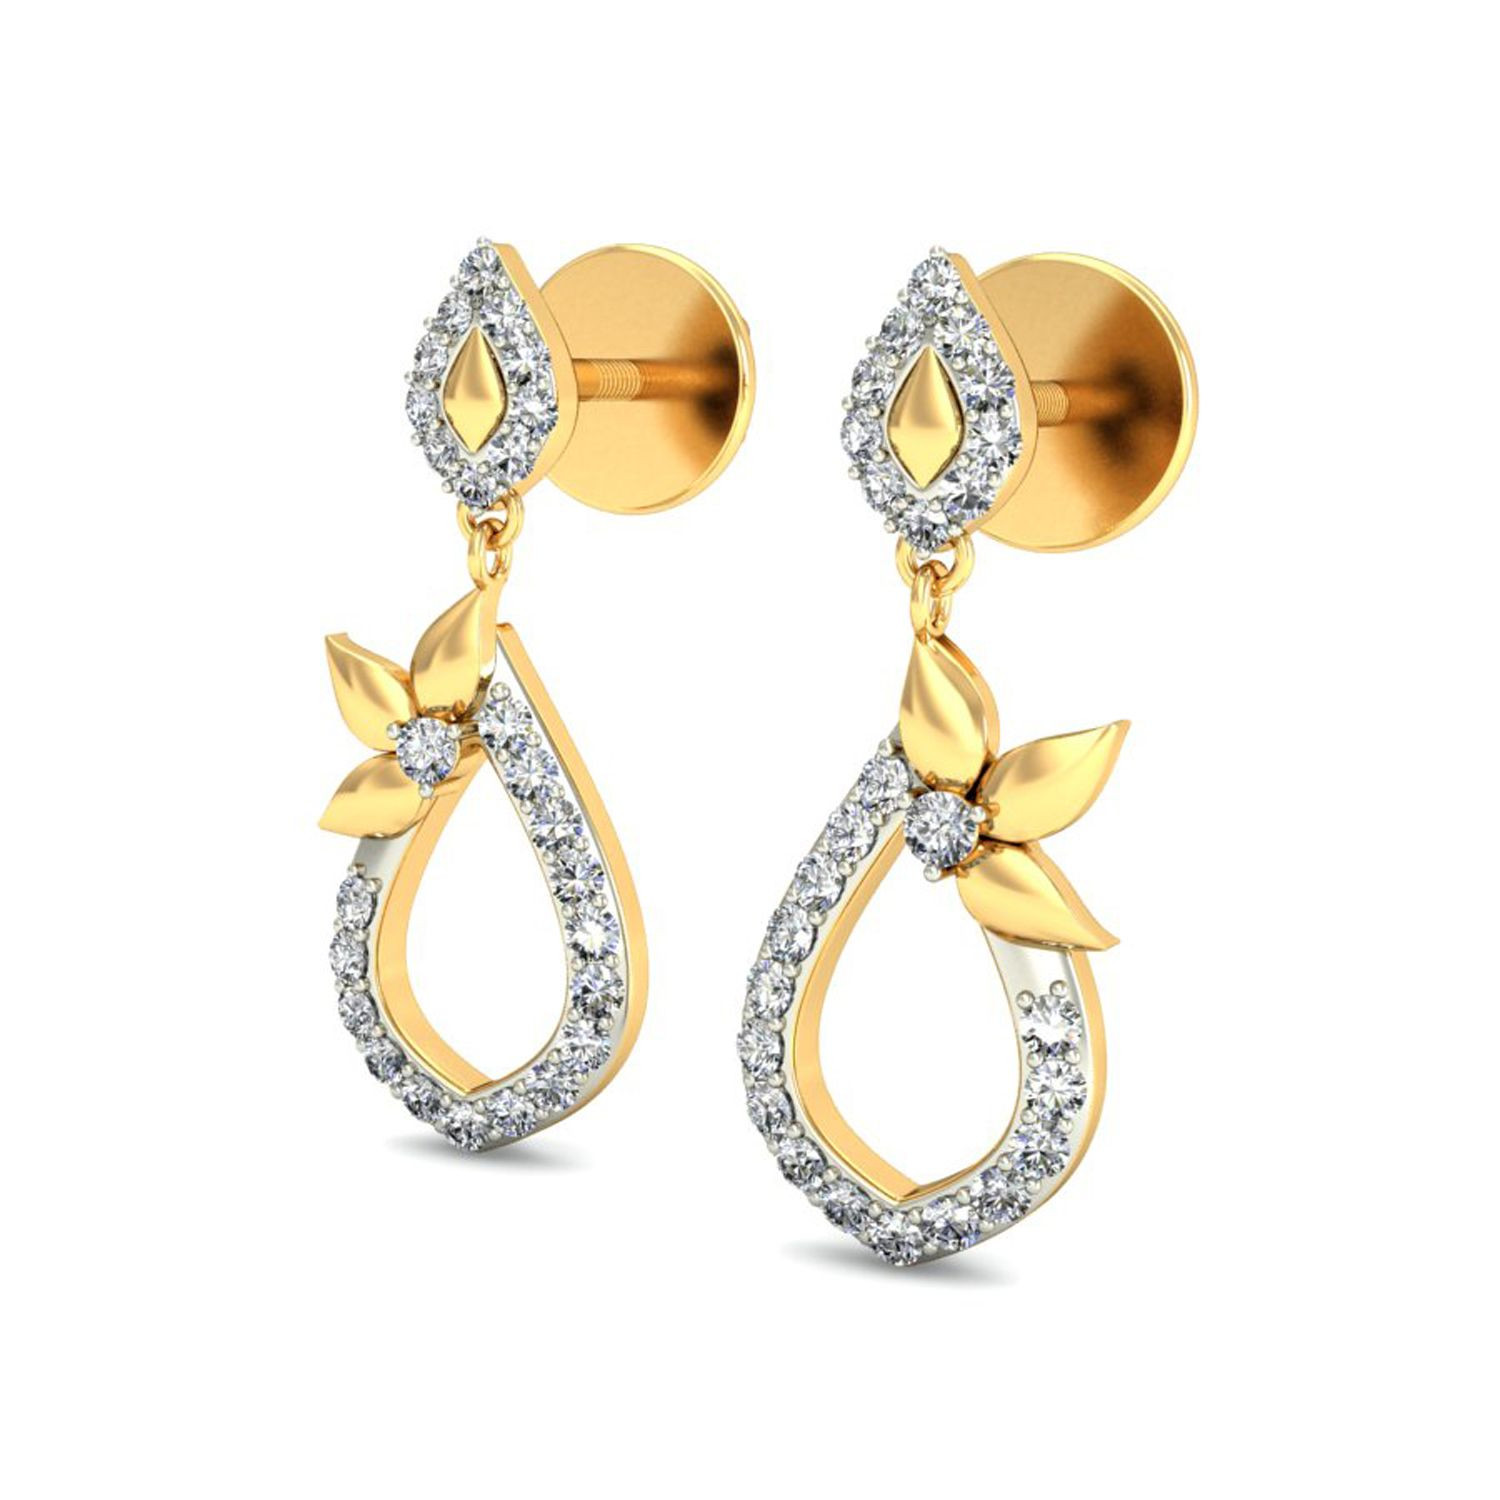 Cheap Real Diamond Earrings
 Daily Wear Earrings Designs Real Certified Diamond 0 34 Ct